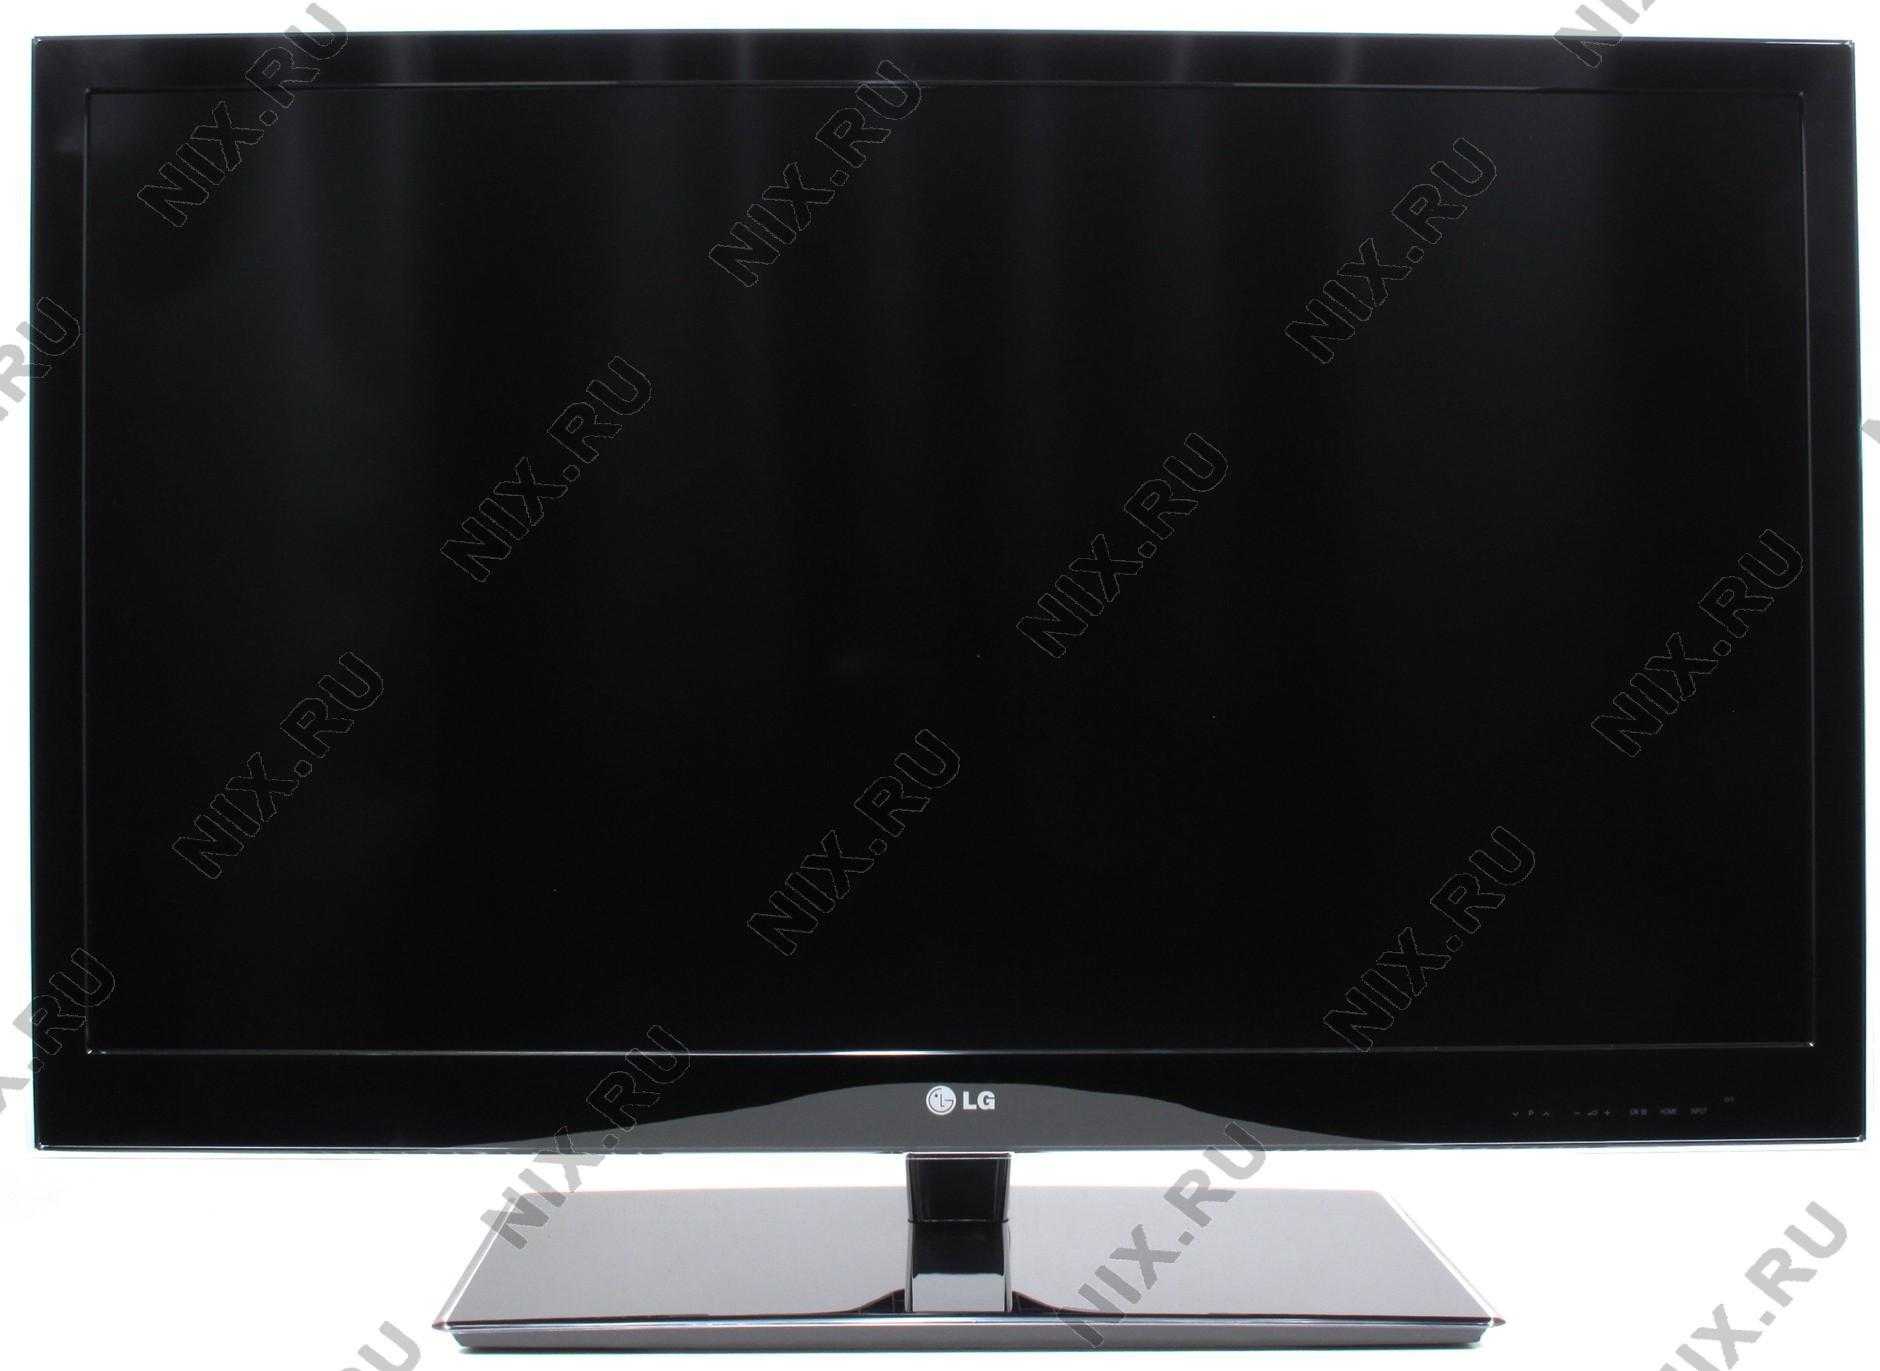 Lg 42lw4500 - купить  в иркутск, скидки, цена, отзывы, обзор, характеристики - телевизоры